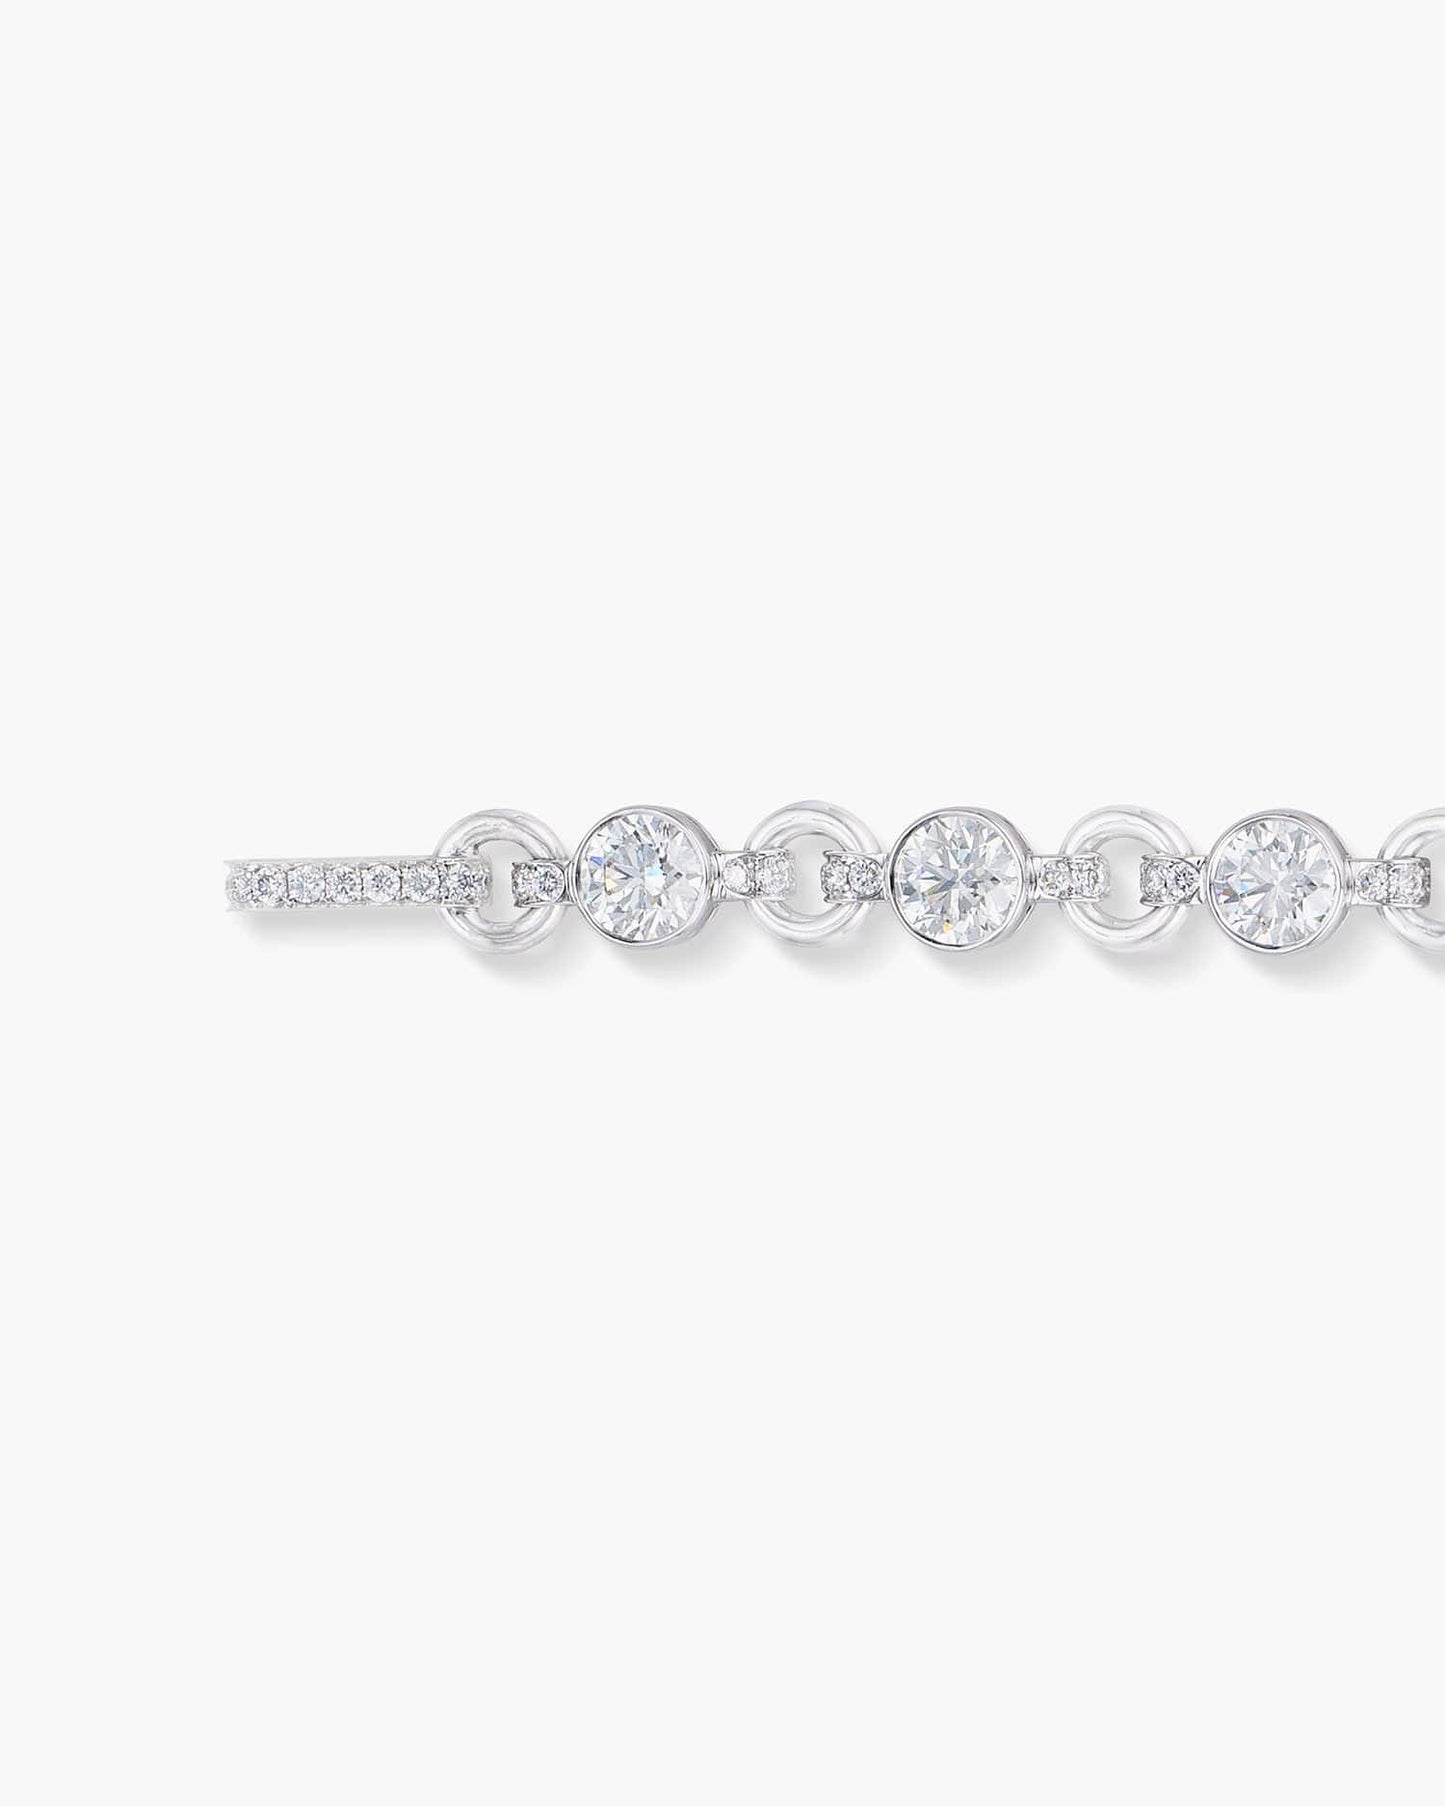 Diamond Charm Bracelet with Hamsa Charm